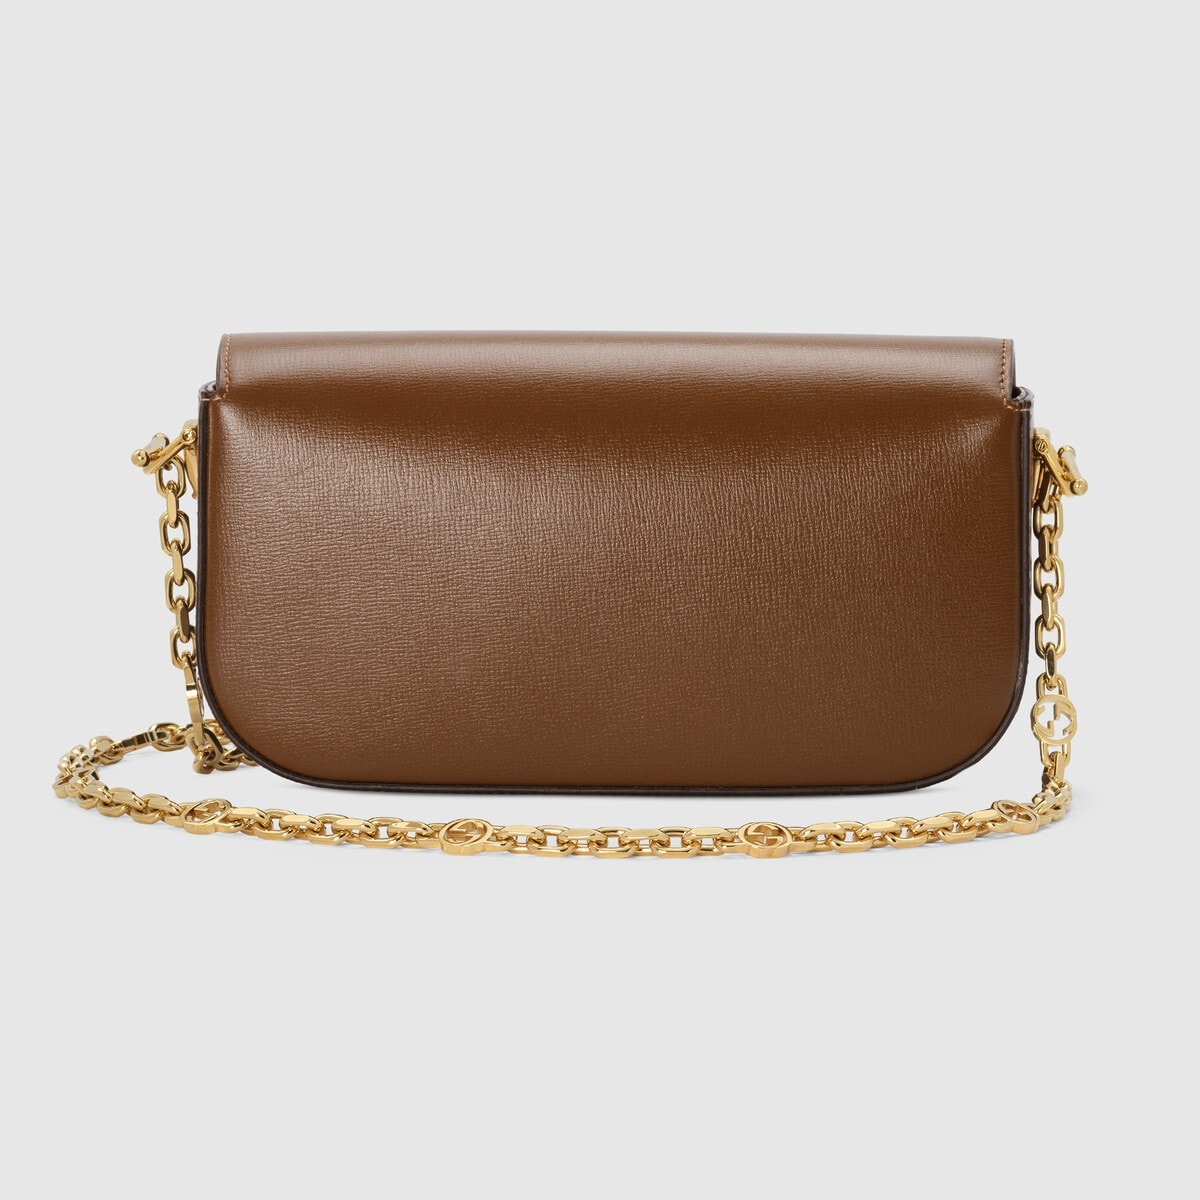 Gucci Horsebit 1955 small shoulder bag - 4